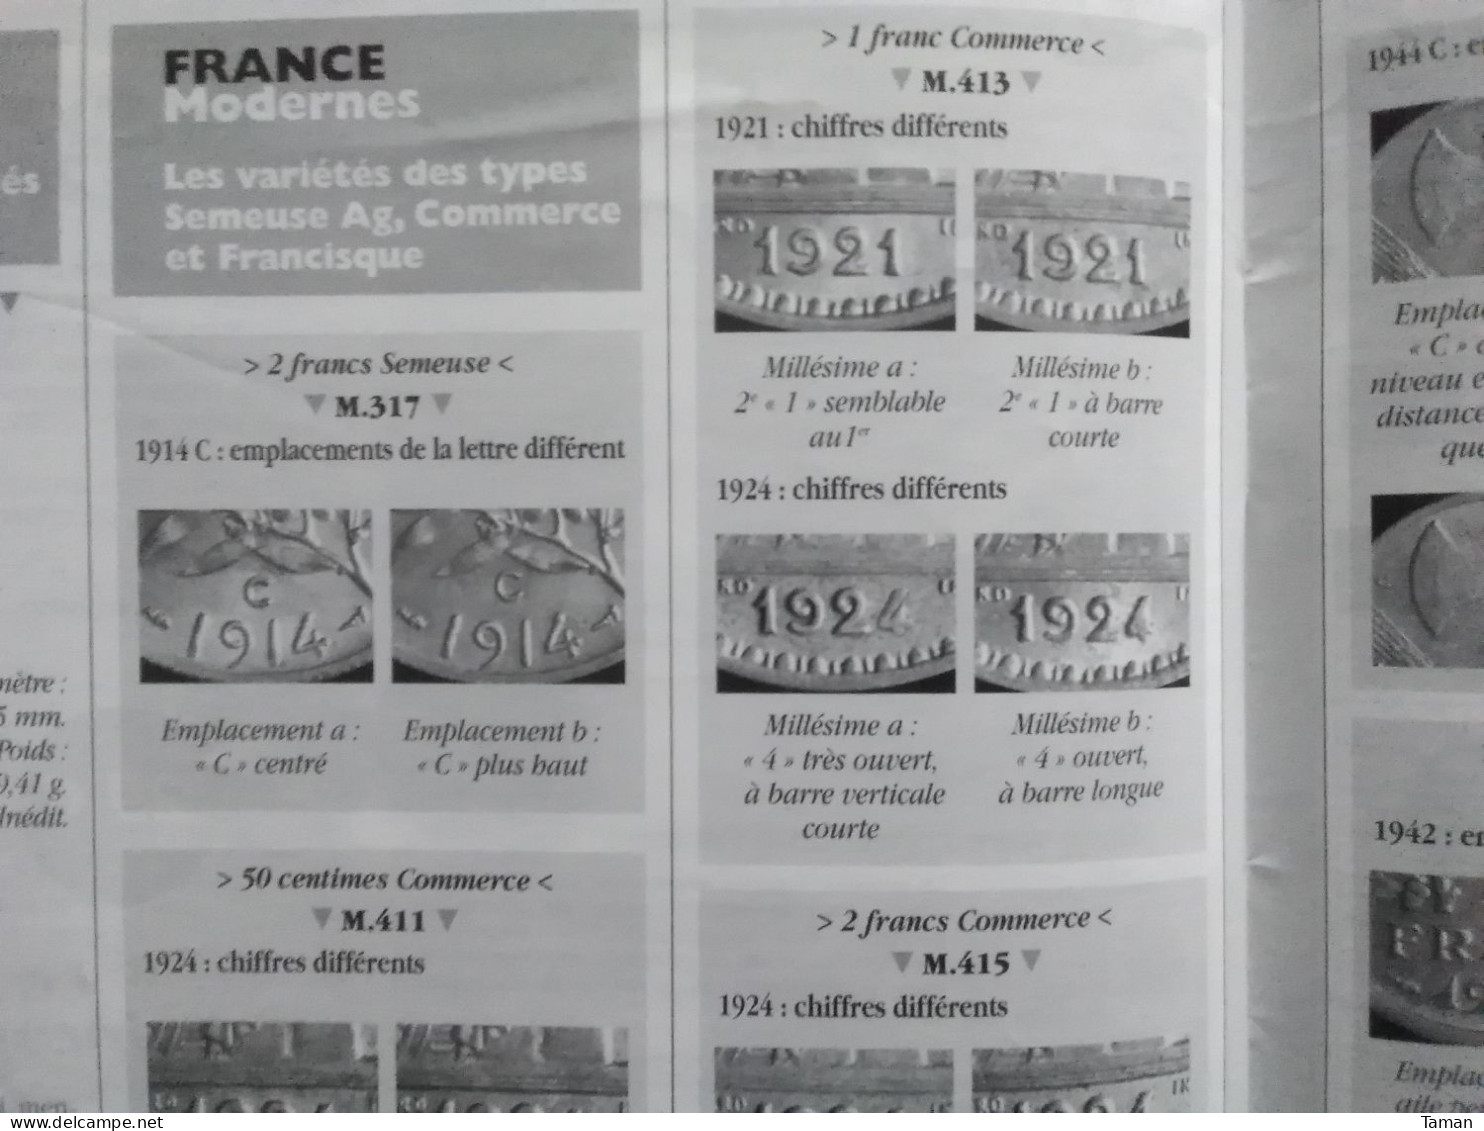 Numismatique & change - Alexandre le Grand - Louis XVIII 40 francs - Médailles vin - variétés semeuse commerce Morlon